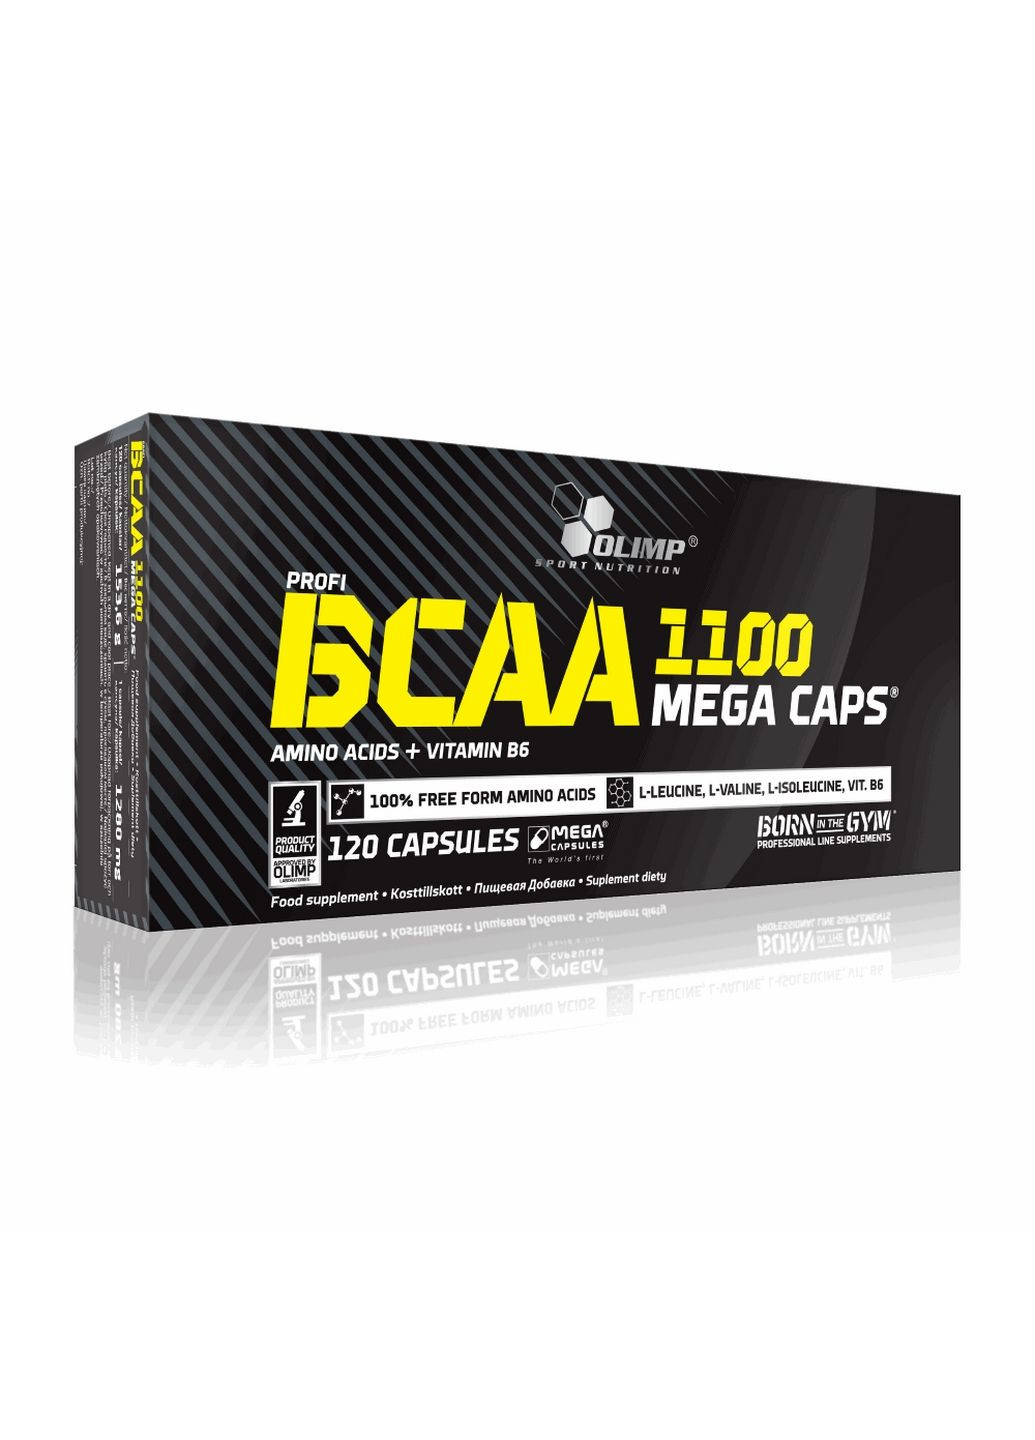 Аминокислота BCAA 1100 Mega Caps, 120 капсул Olimp (293342159)